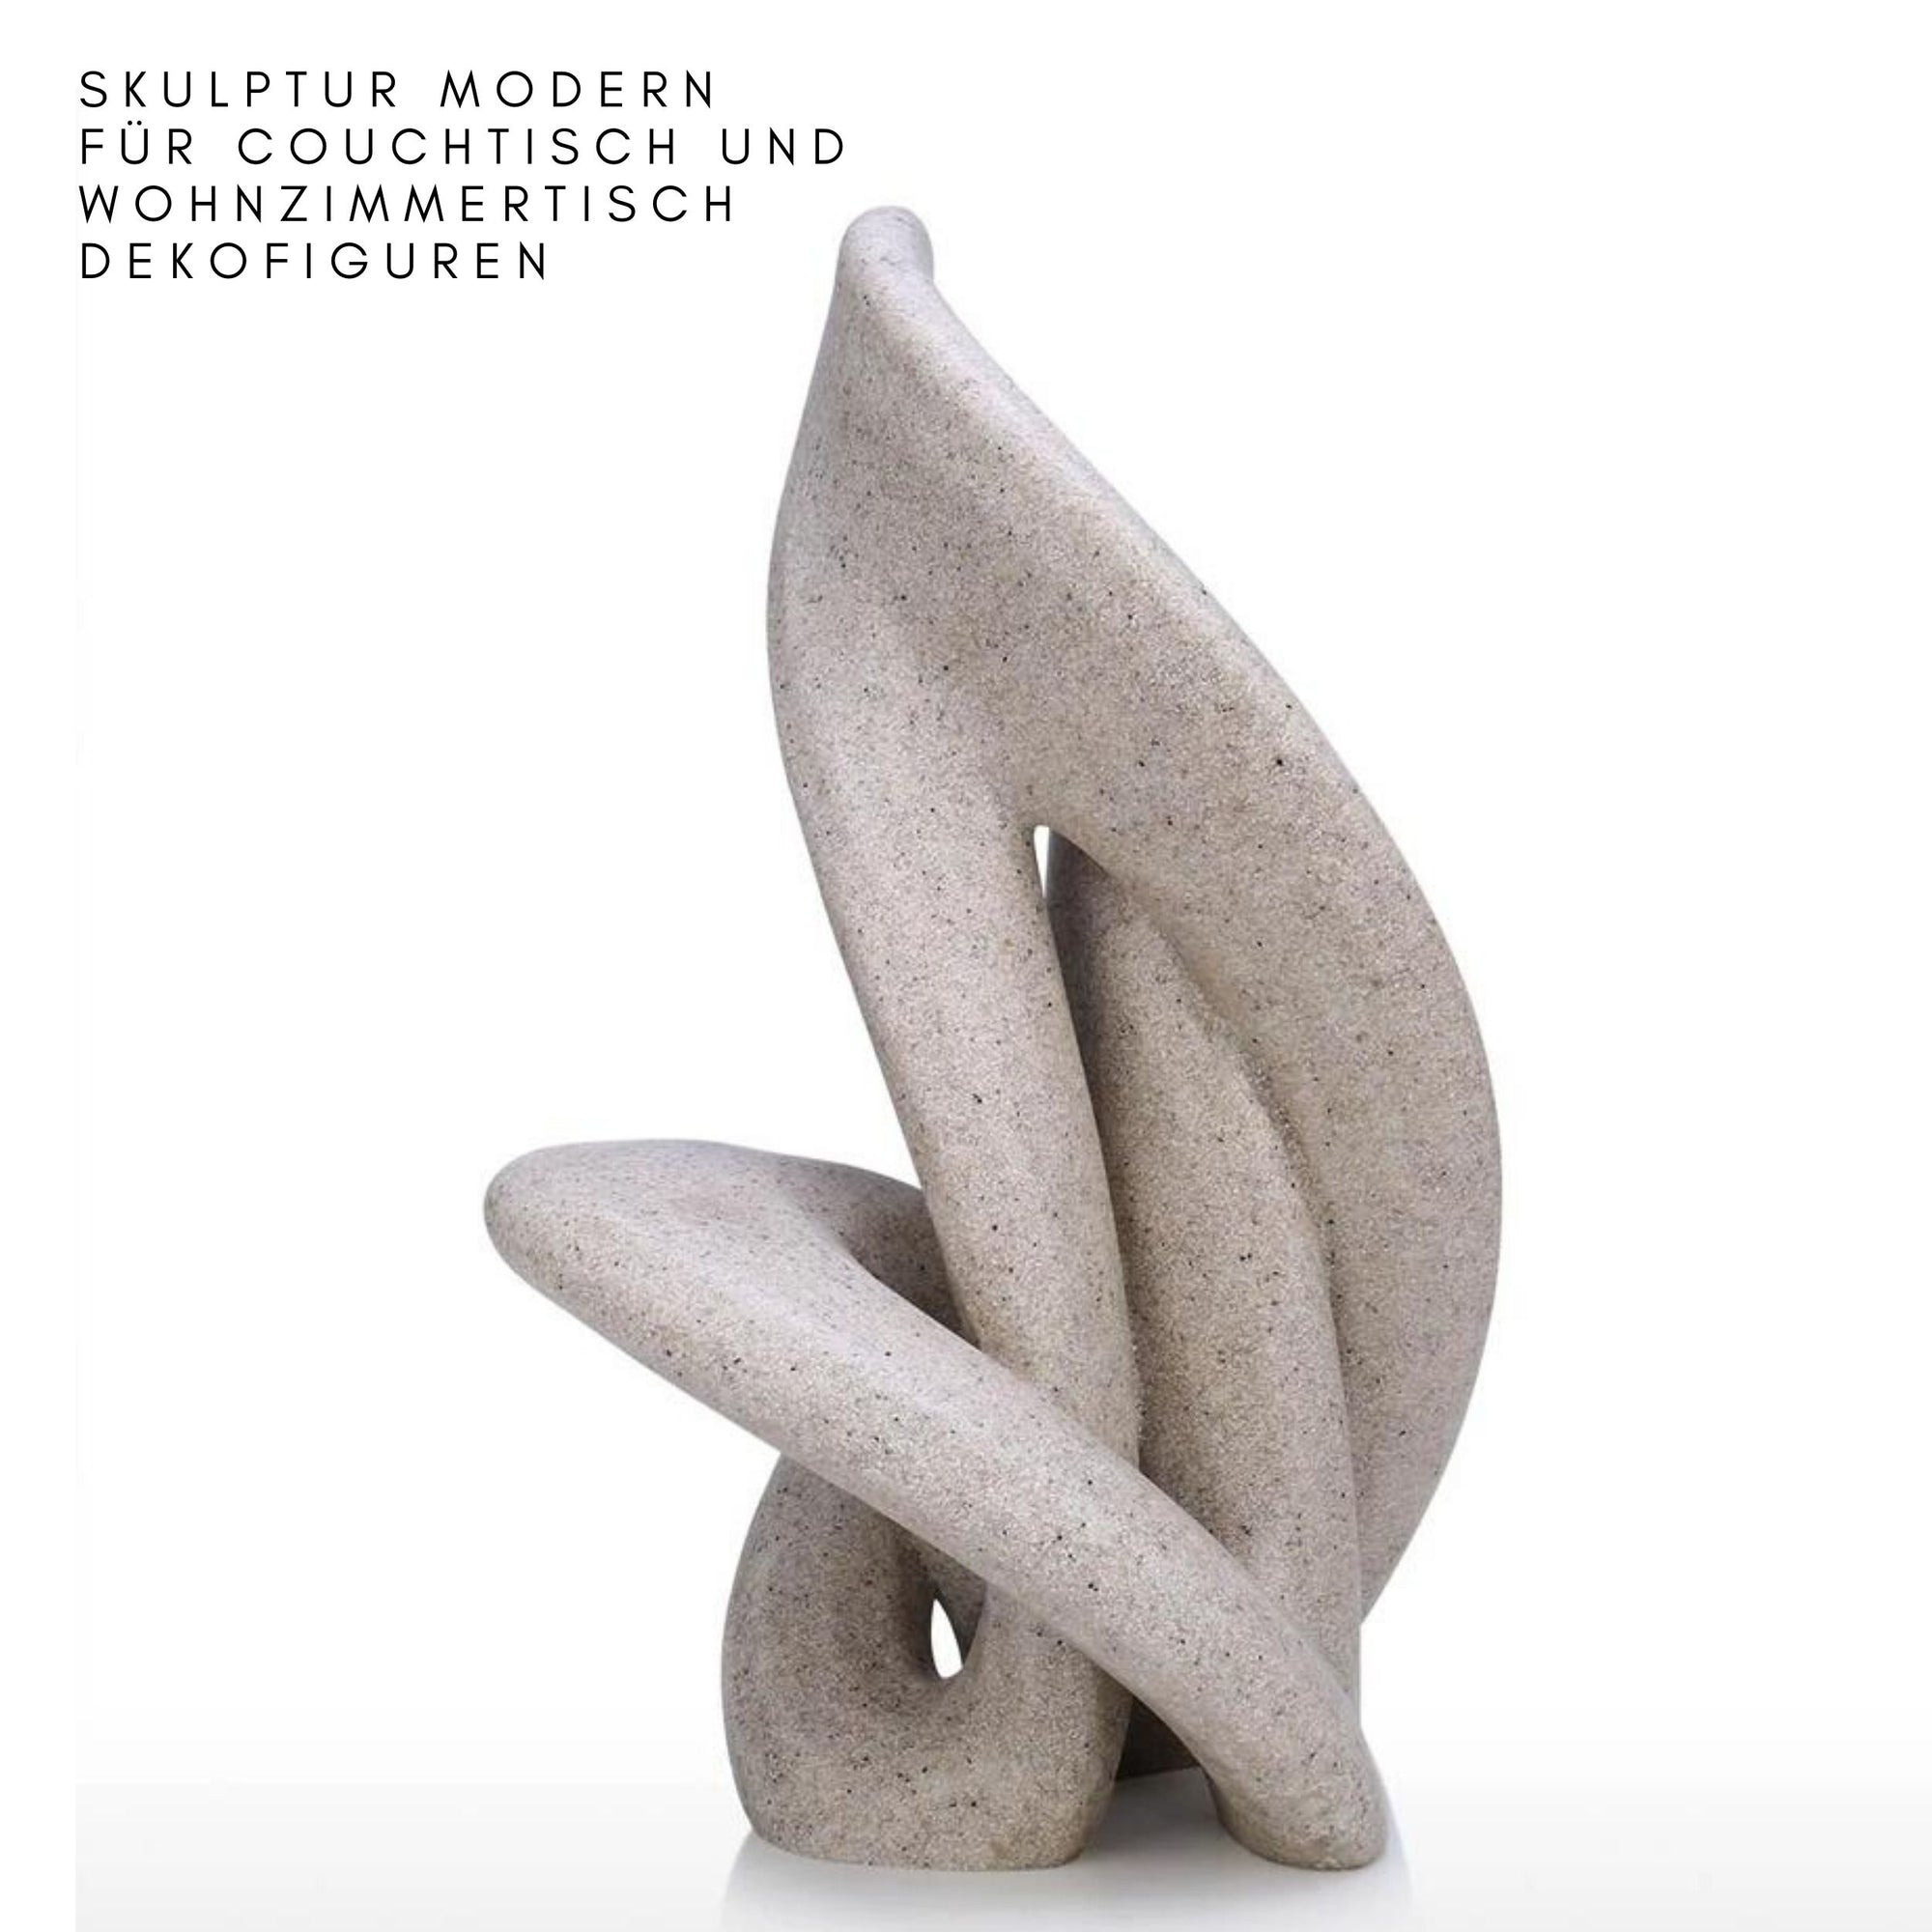 Skulptur Modern für Couchtisch und Wohnzimmertisch Dekofiguren